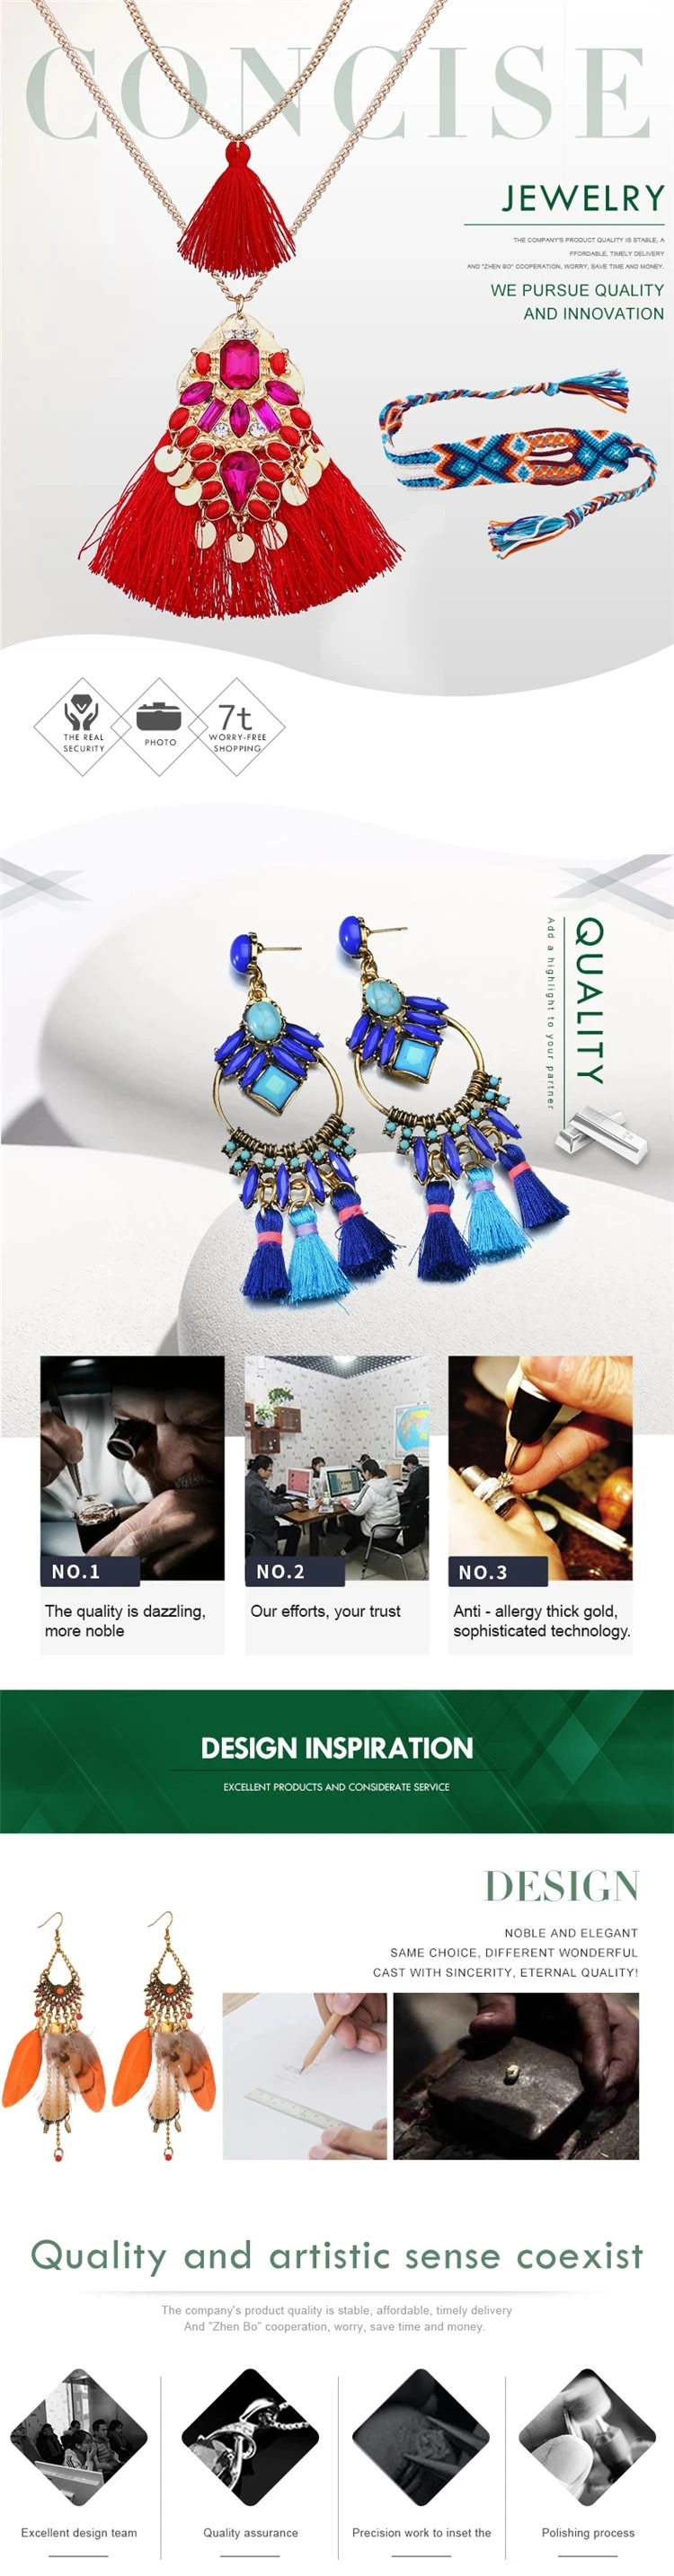 2019 Fashion Jewelry Brass Handmade Earring Sets for Women Men, Fashion Earrings